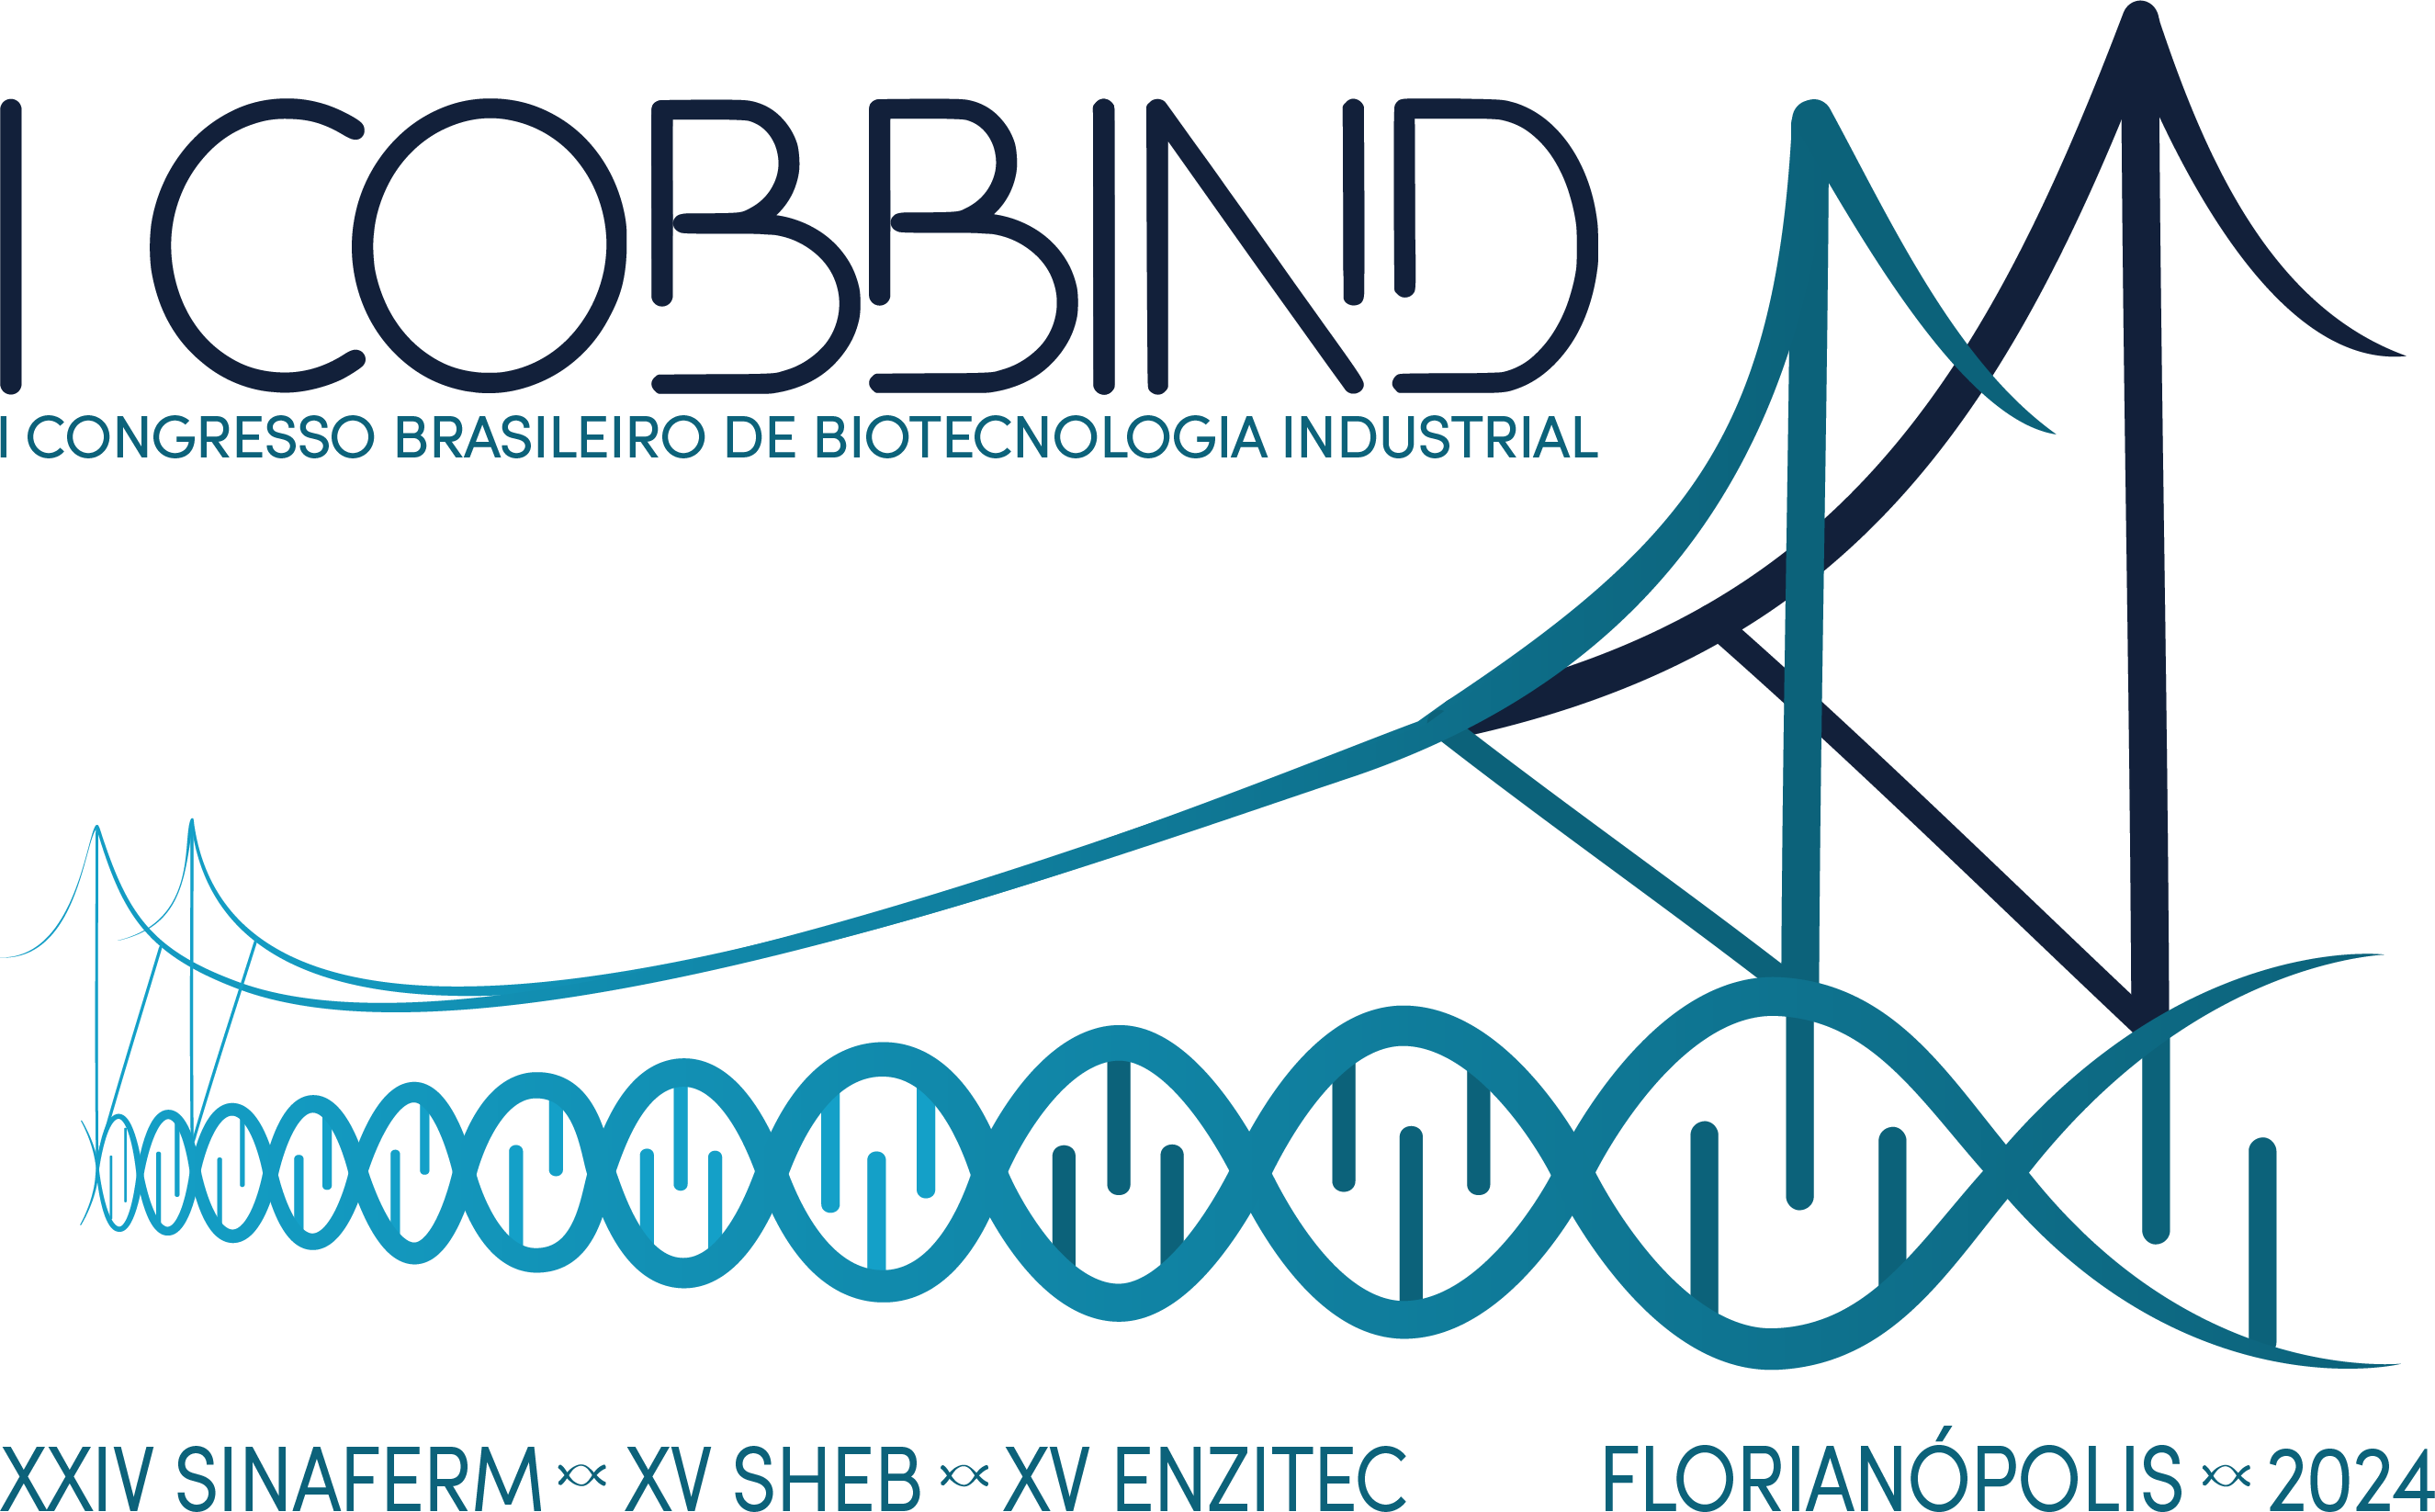 I COBBIND – I CONGRESSO BRASILEIRO DE BIOTECNOLOGIA INDUSTRIAL